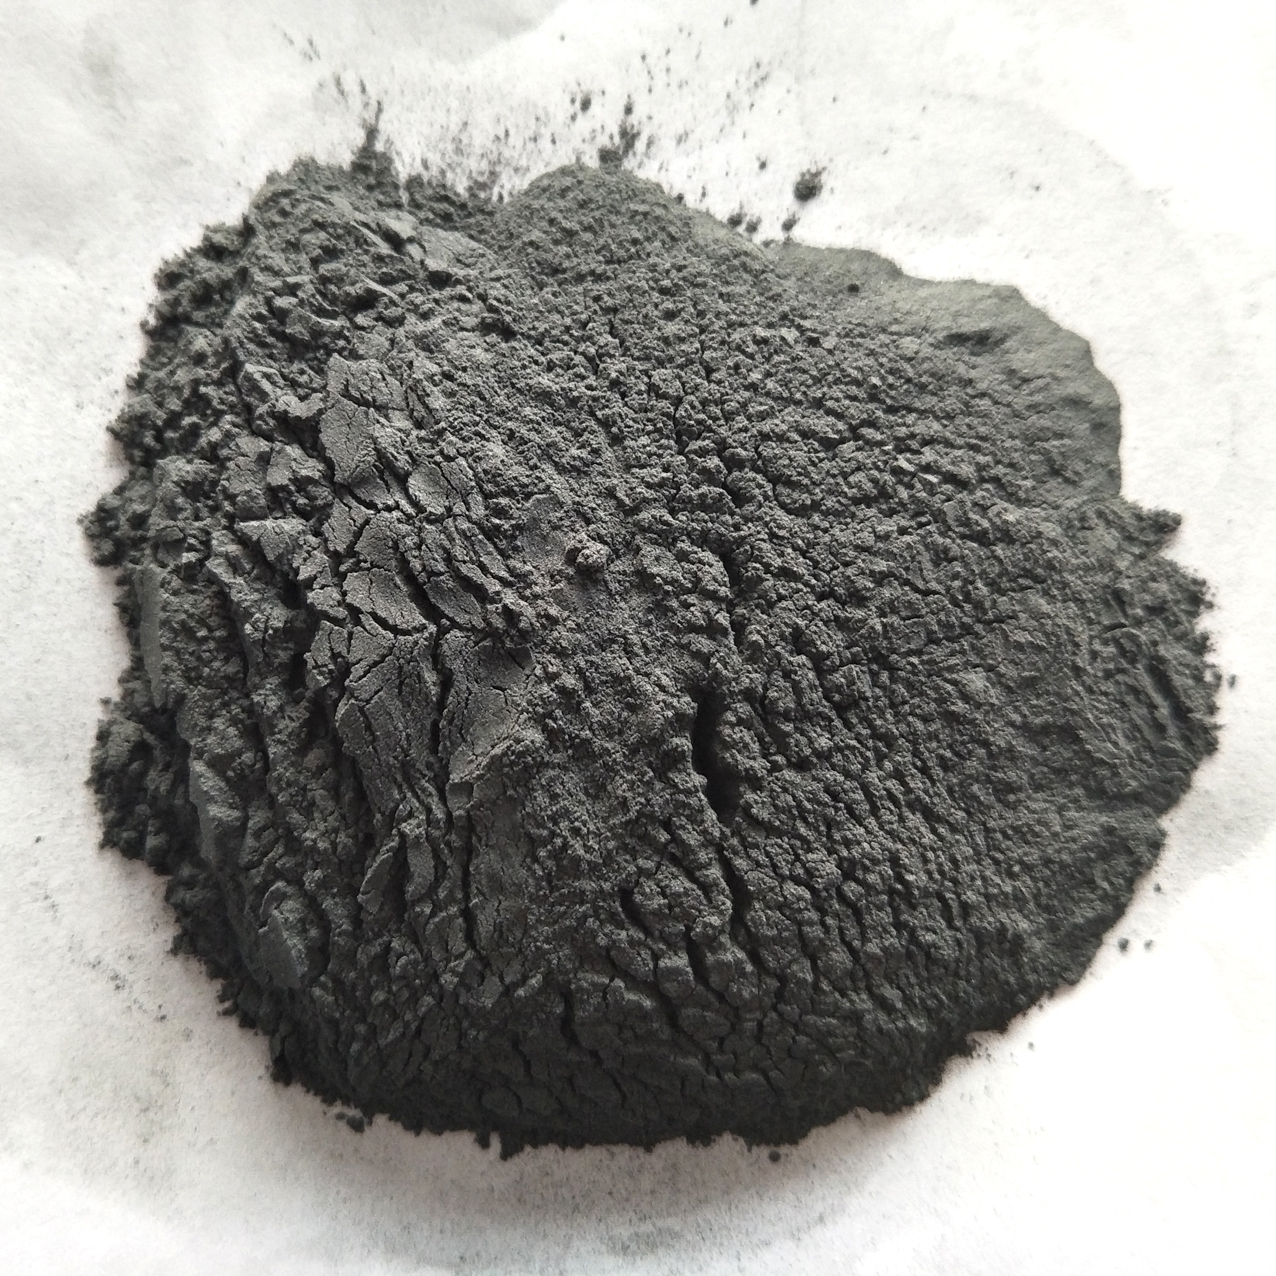 電氣石粉的新用途-空氣凈化、環境治理